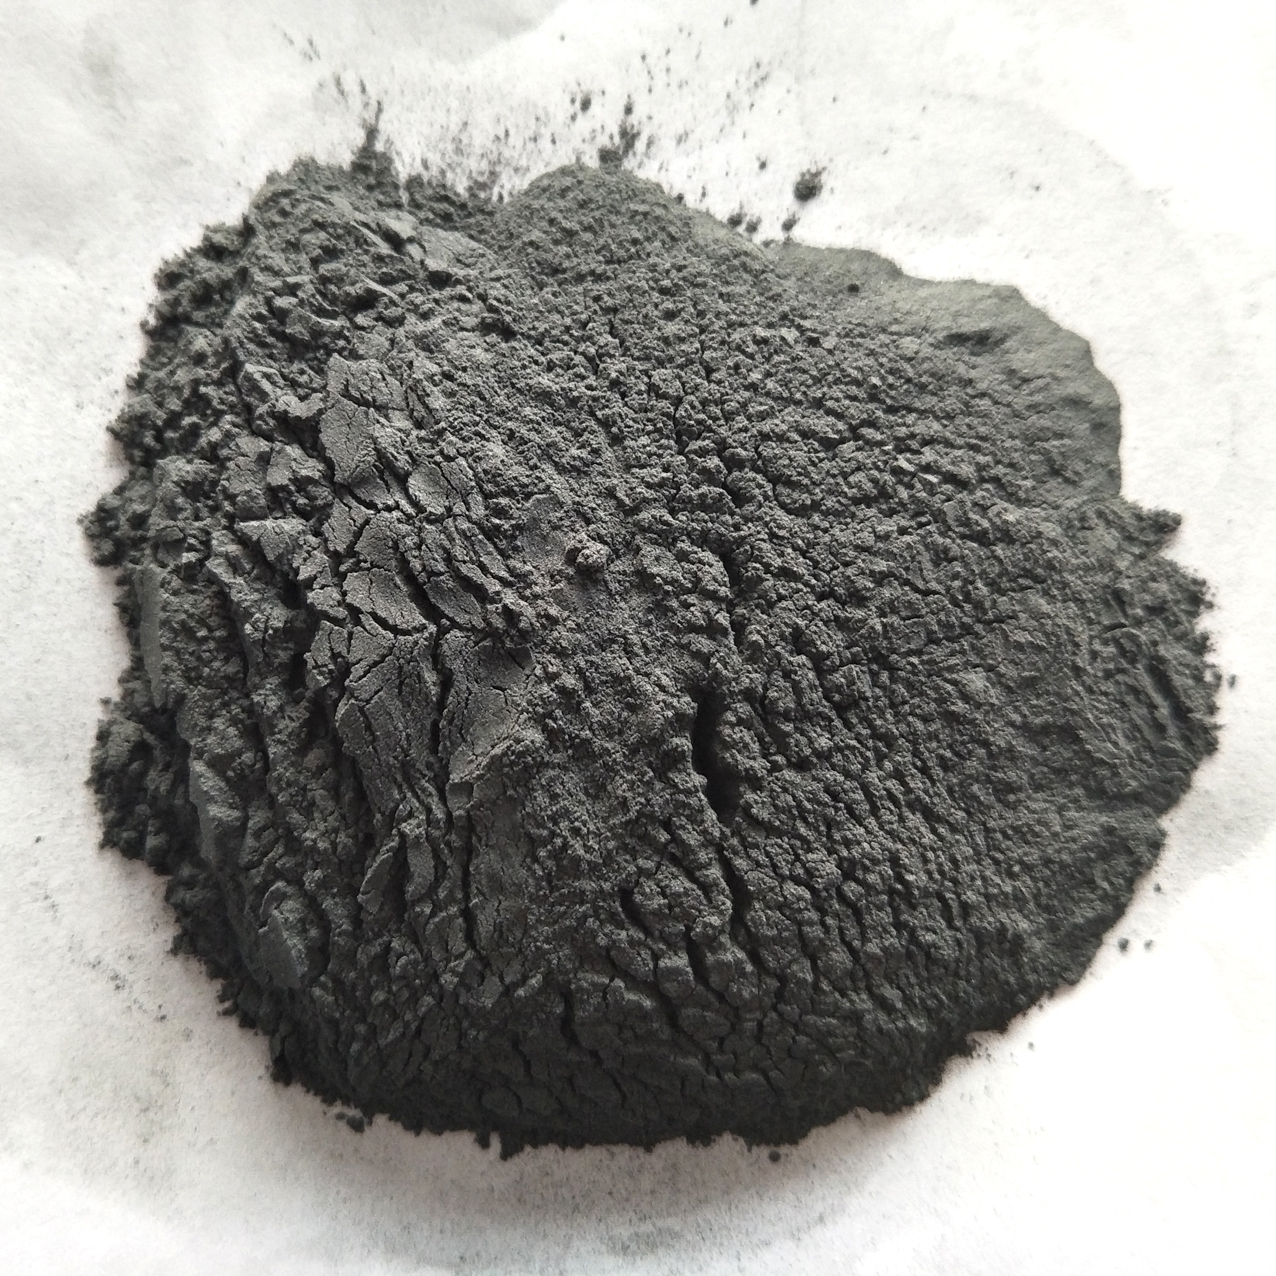 電氣石粉的新用途-空氣凈化、環境治理